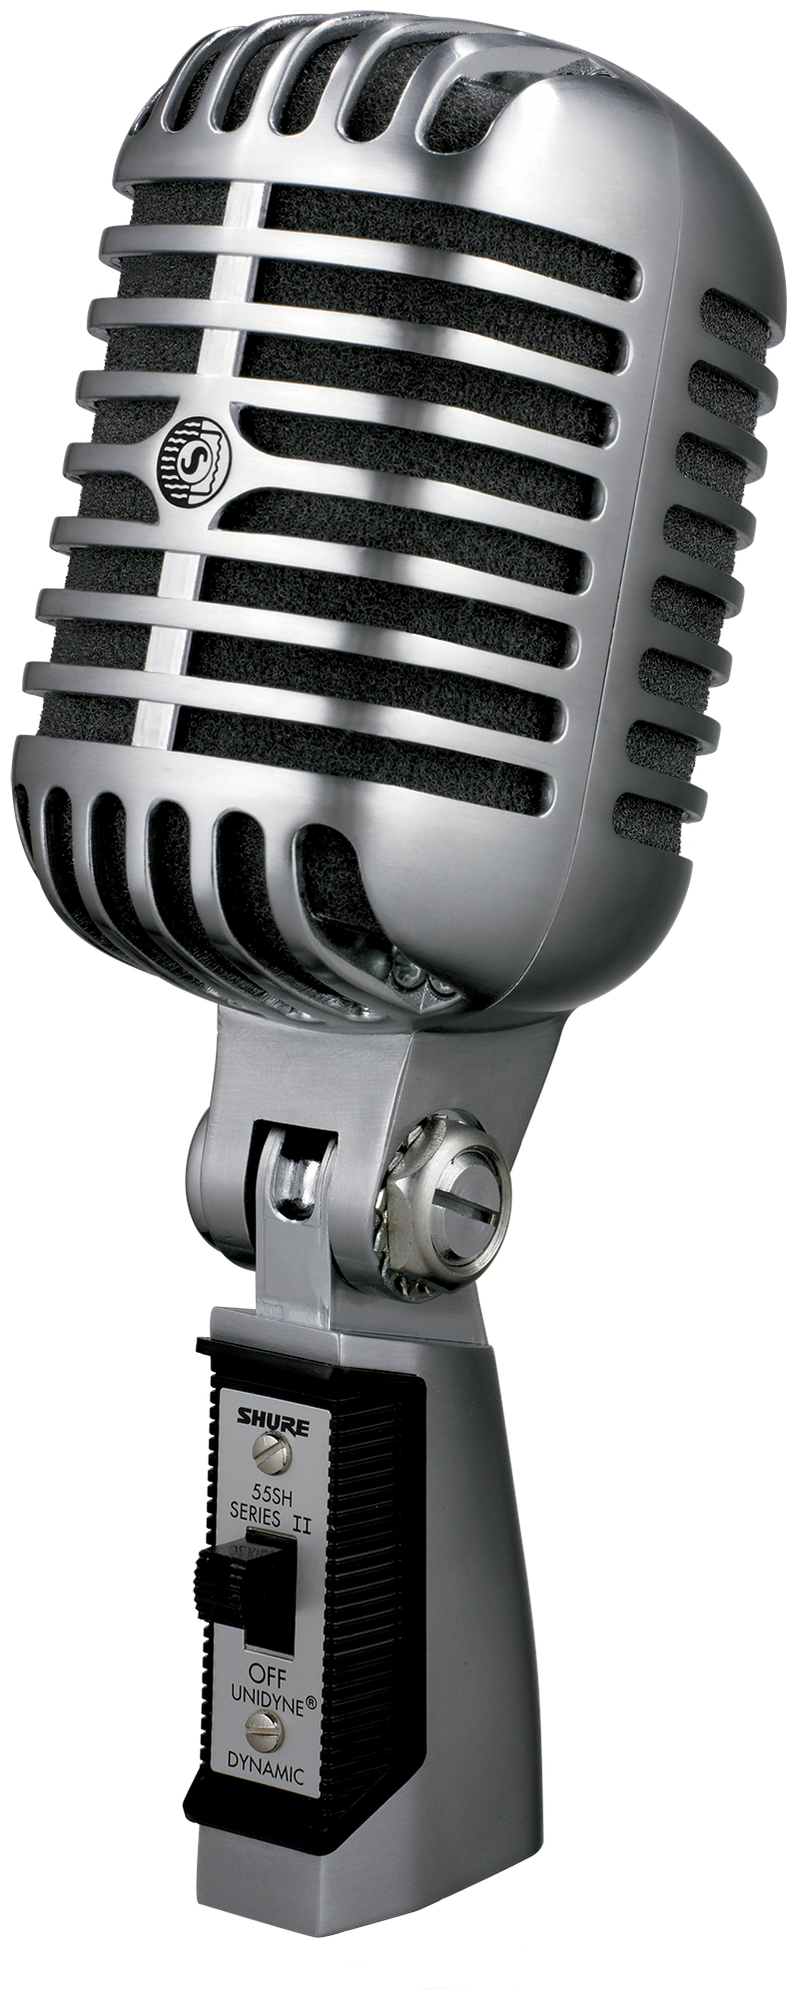 SHURE 55SH SERIES II Вокальный микрофон Элвиса динамический кардиоидный, 50-15000 Гц, 1,5 мВ/Па, поворотный держатель со встроенной резьбой